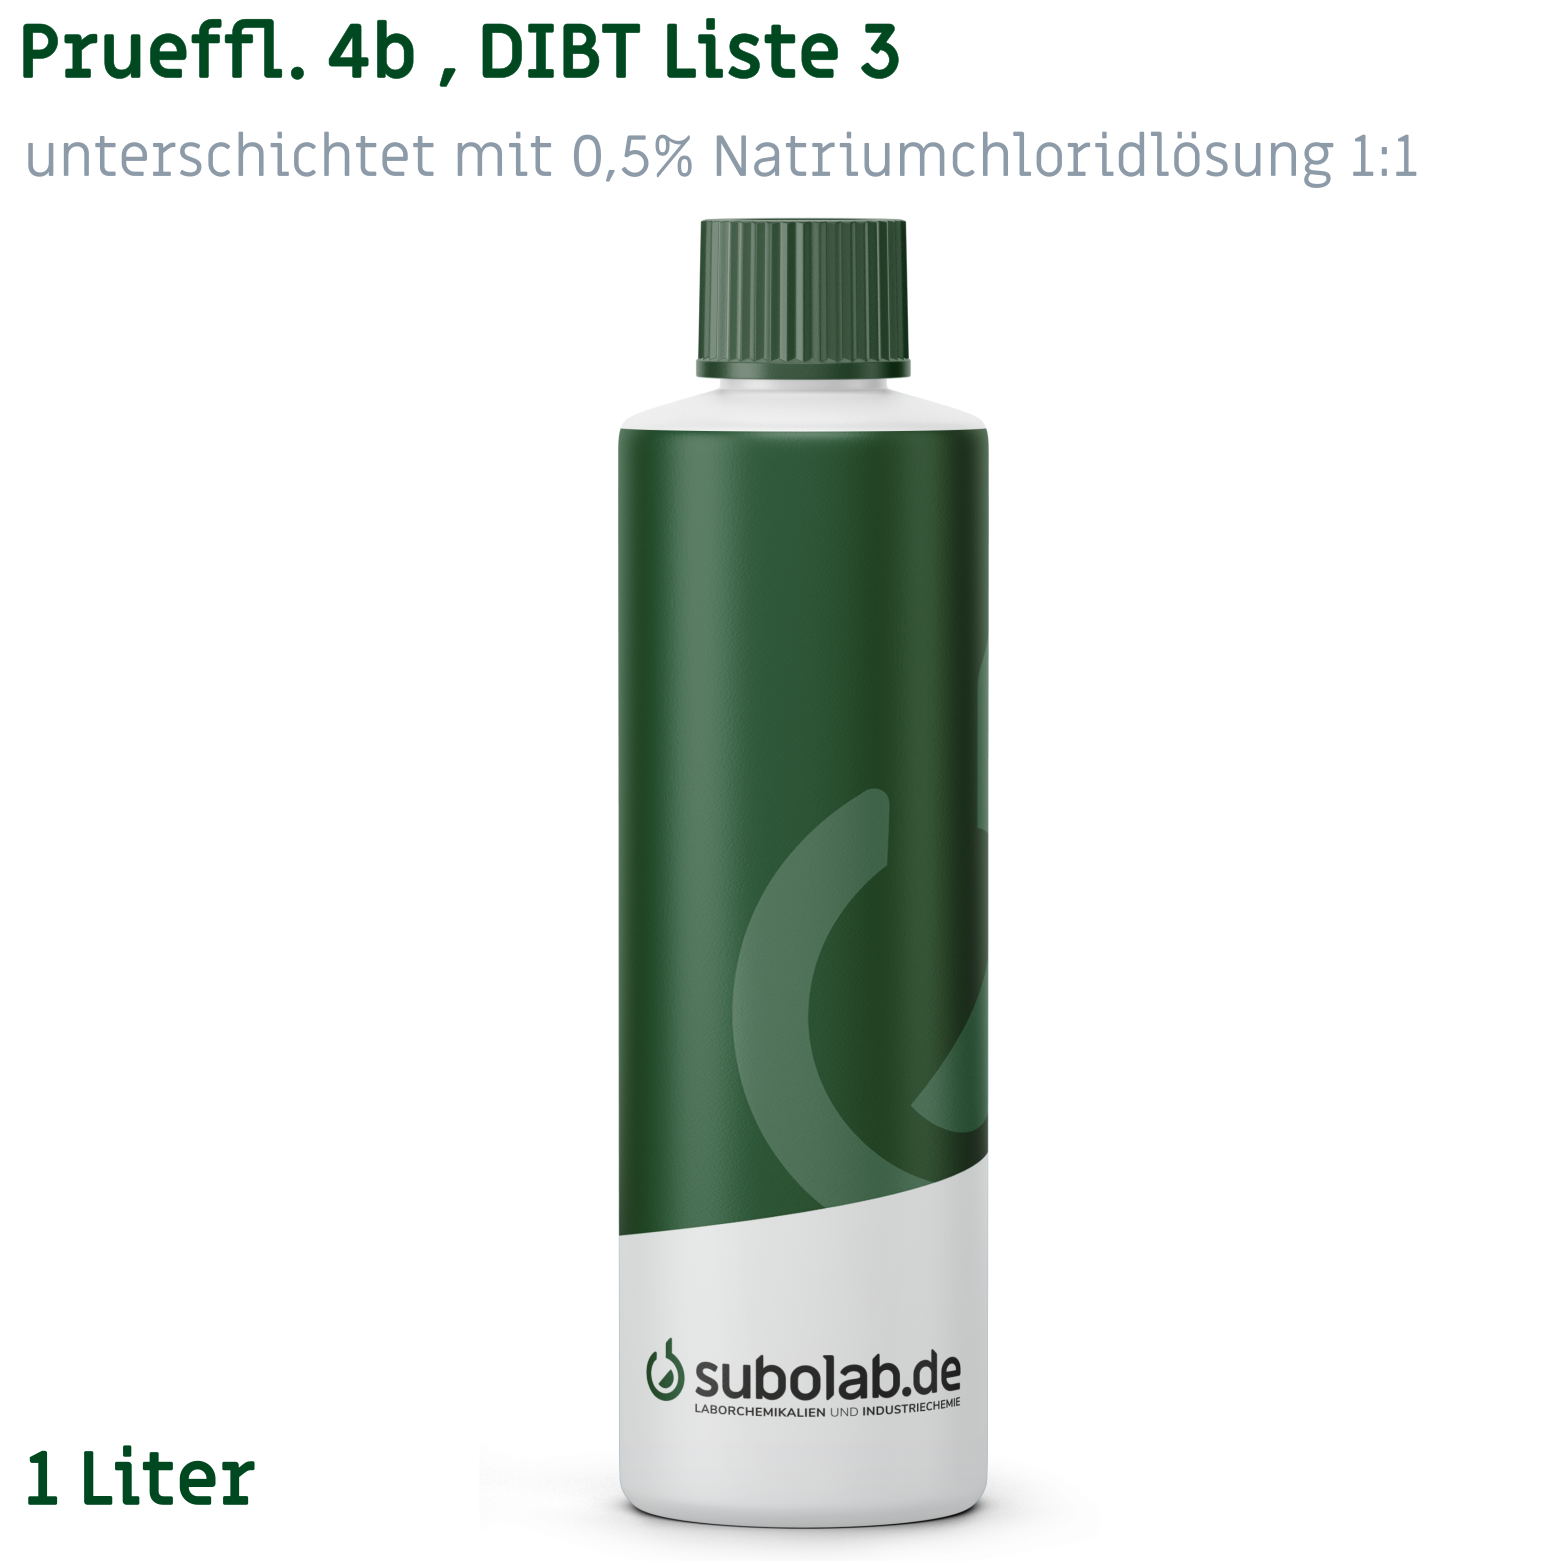 Bild von Prueffl. 4b , DIBT Liste 3, unterschichtet mit 0,5% Natriumchloridlösung 1:1 (1 Liter)